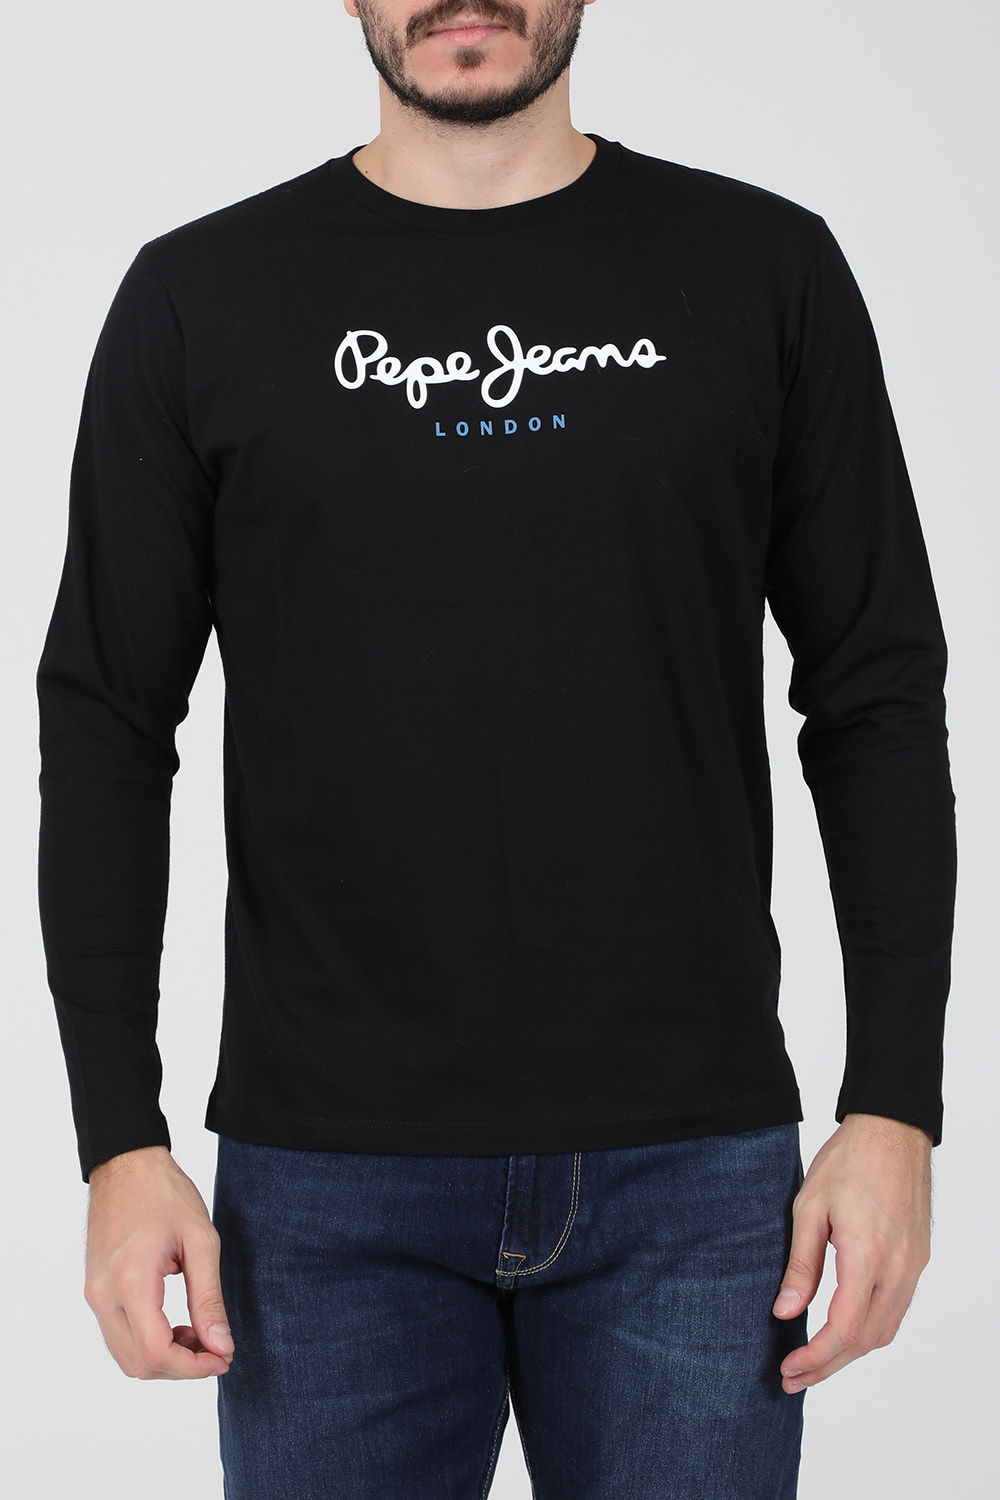 Ανδρικά/Ρούχα/Μπλούζες/Μακρυμάνικες PEPE JEANS - Ανδρική μακρυμάνικη μπλούζα PEPE JEANS NOS EGGO μαύρη